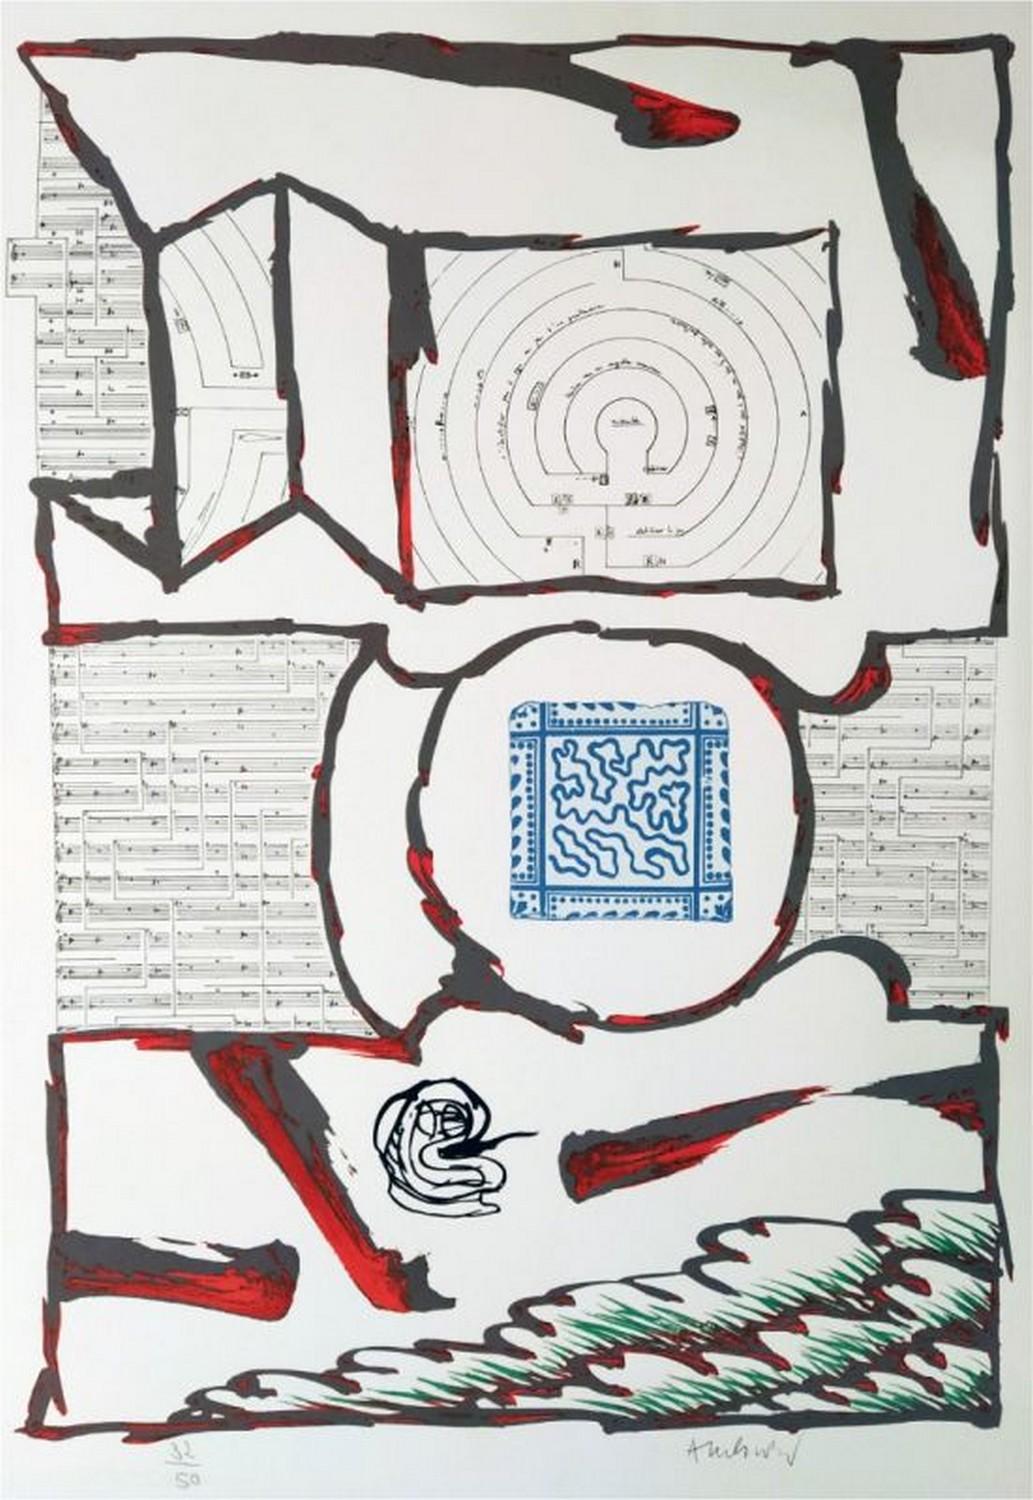 Pierre Alechinsky Abstract Print - Chutes et panaches, avec extraits de partitions labyrinthiques de Jean-Yves Boss